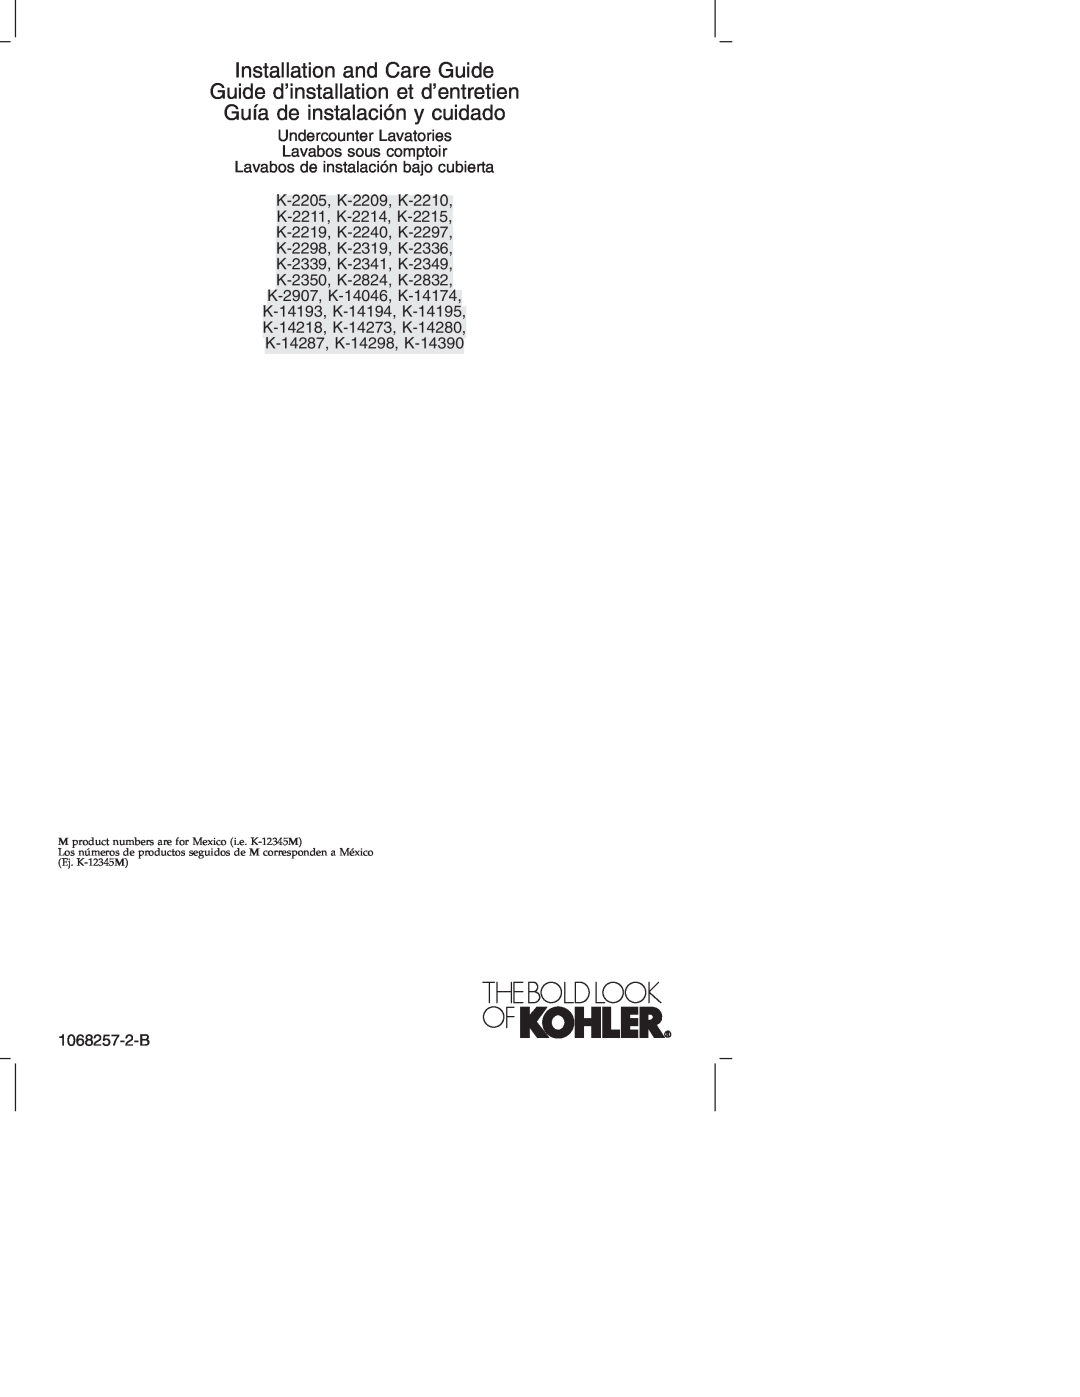 Kohler K-2214 manual Installation and Care Guide, Guide d’installation et d’entretien, Guía de instalación y cuidado 